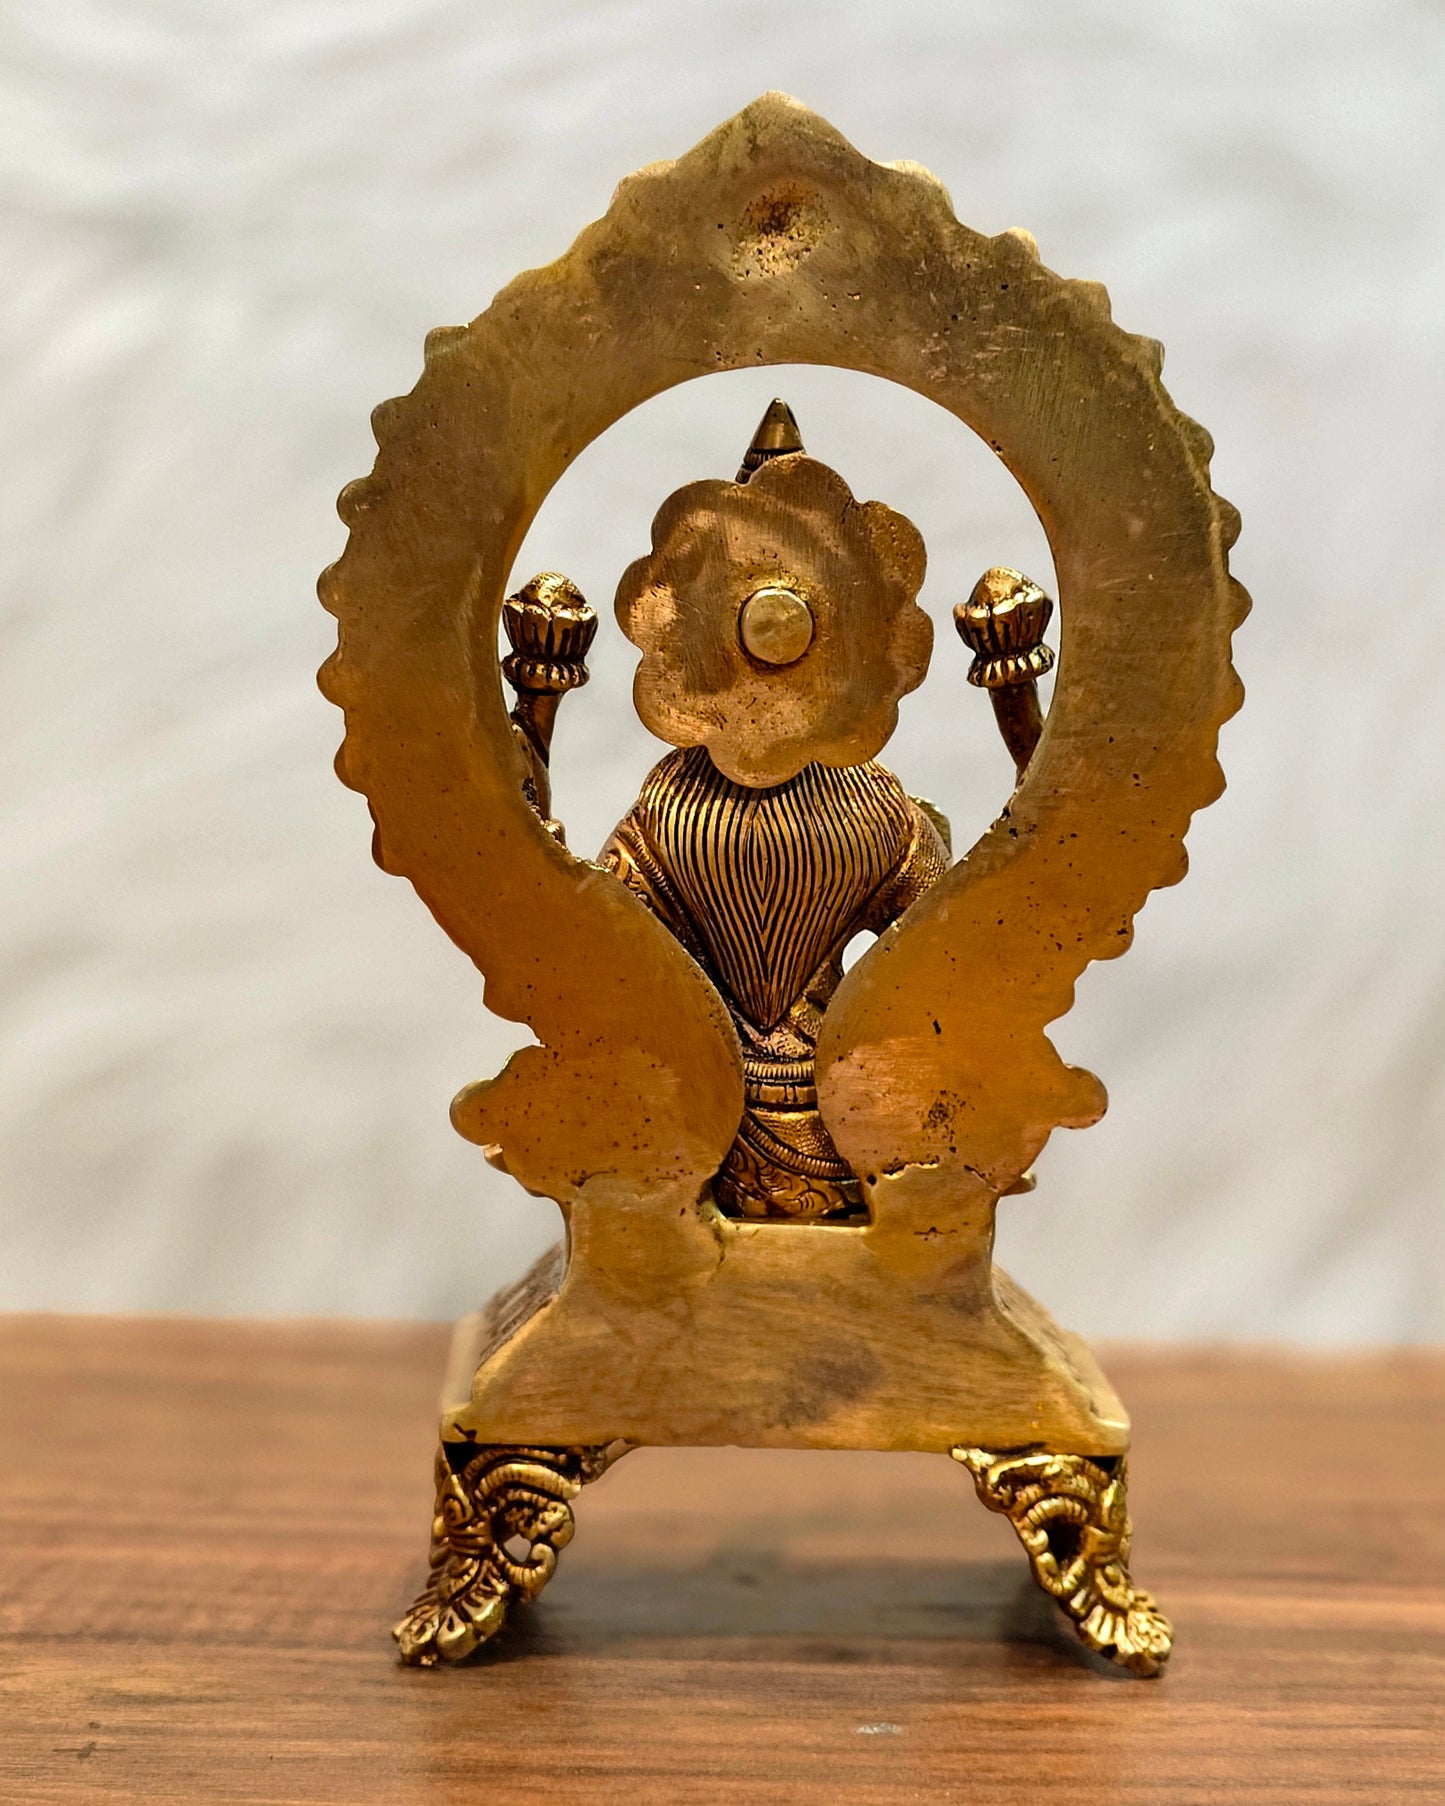 Brass SuperFine Lakshmi idol 9.5"